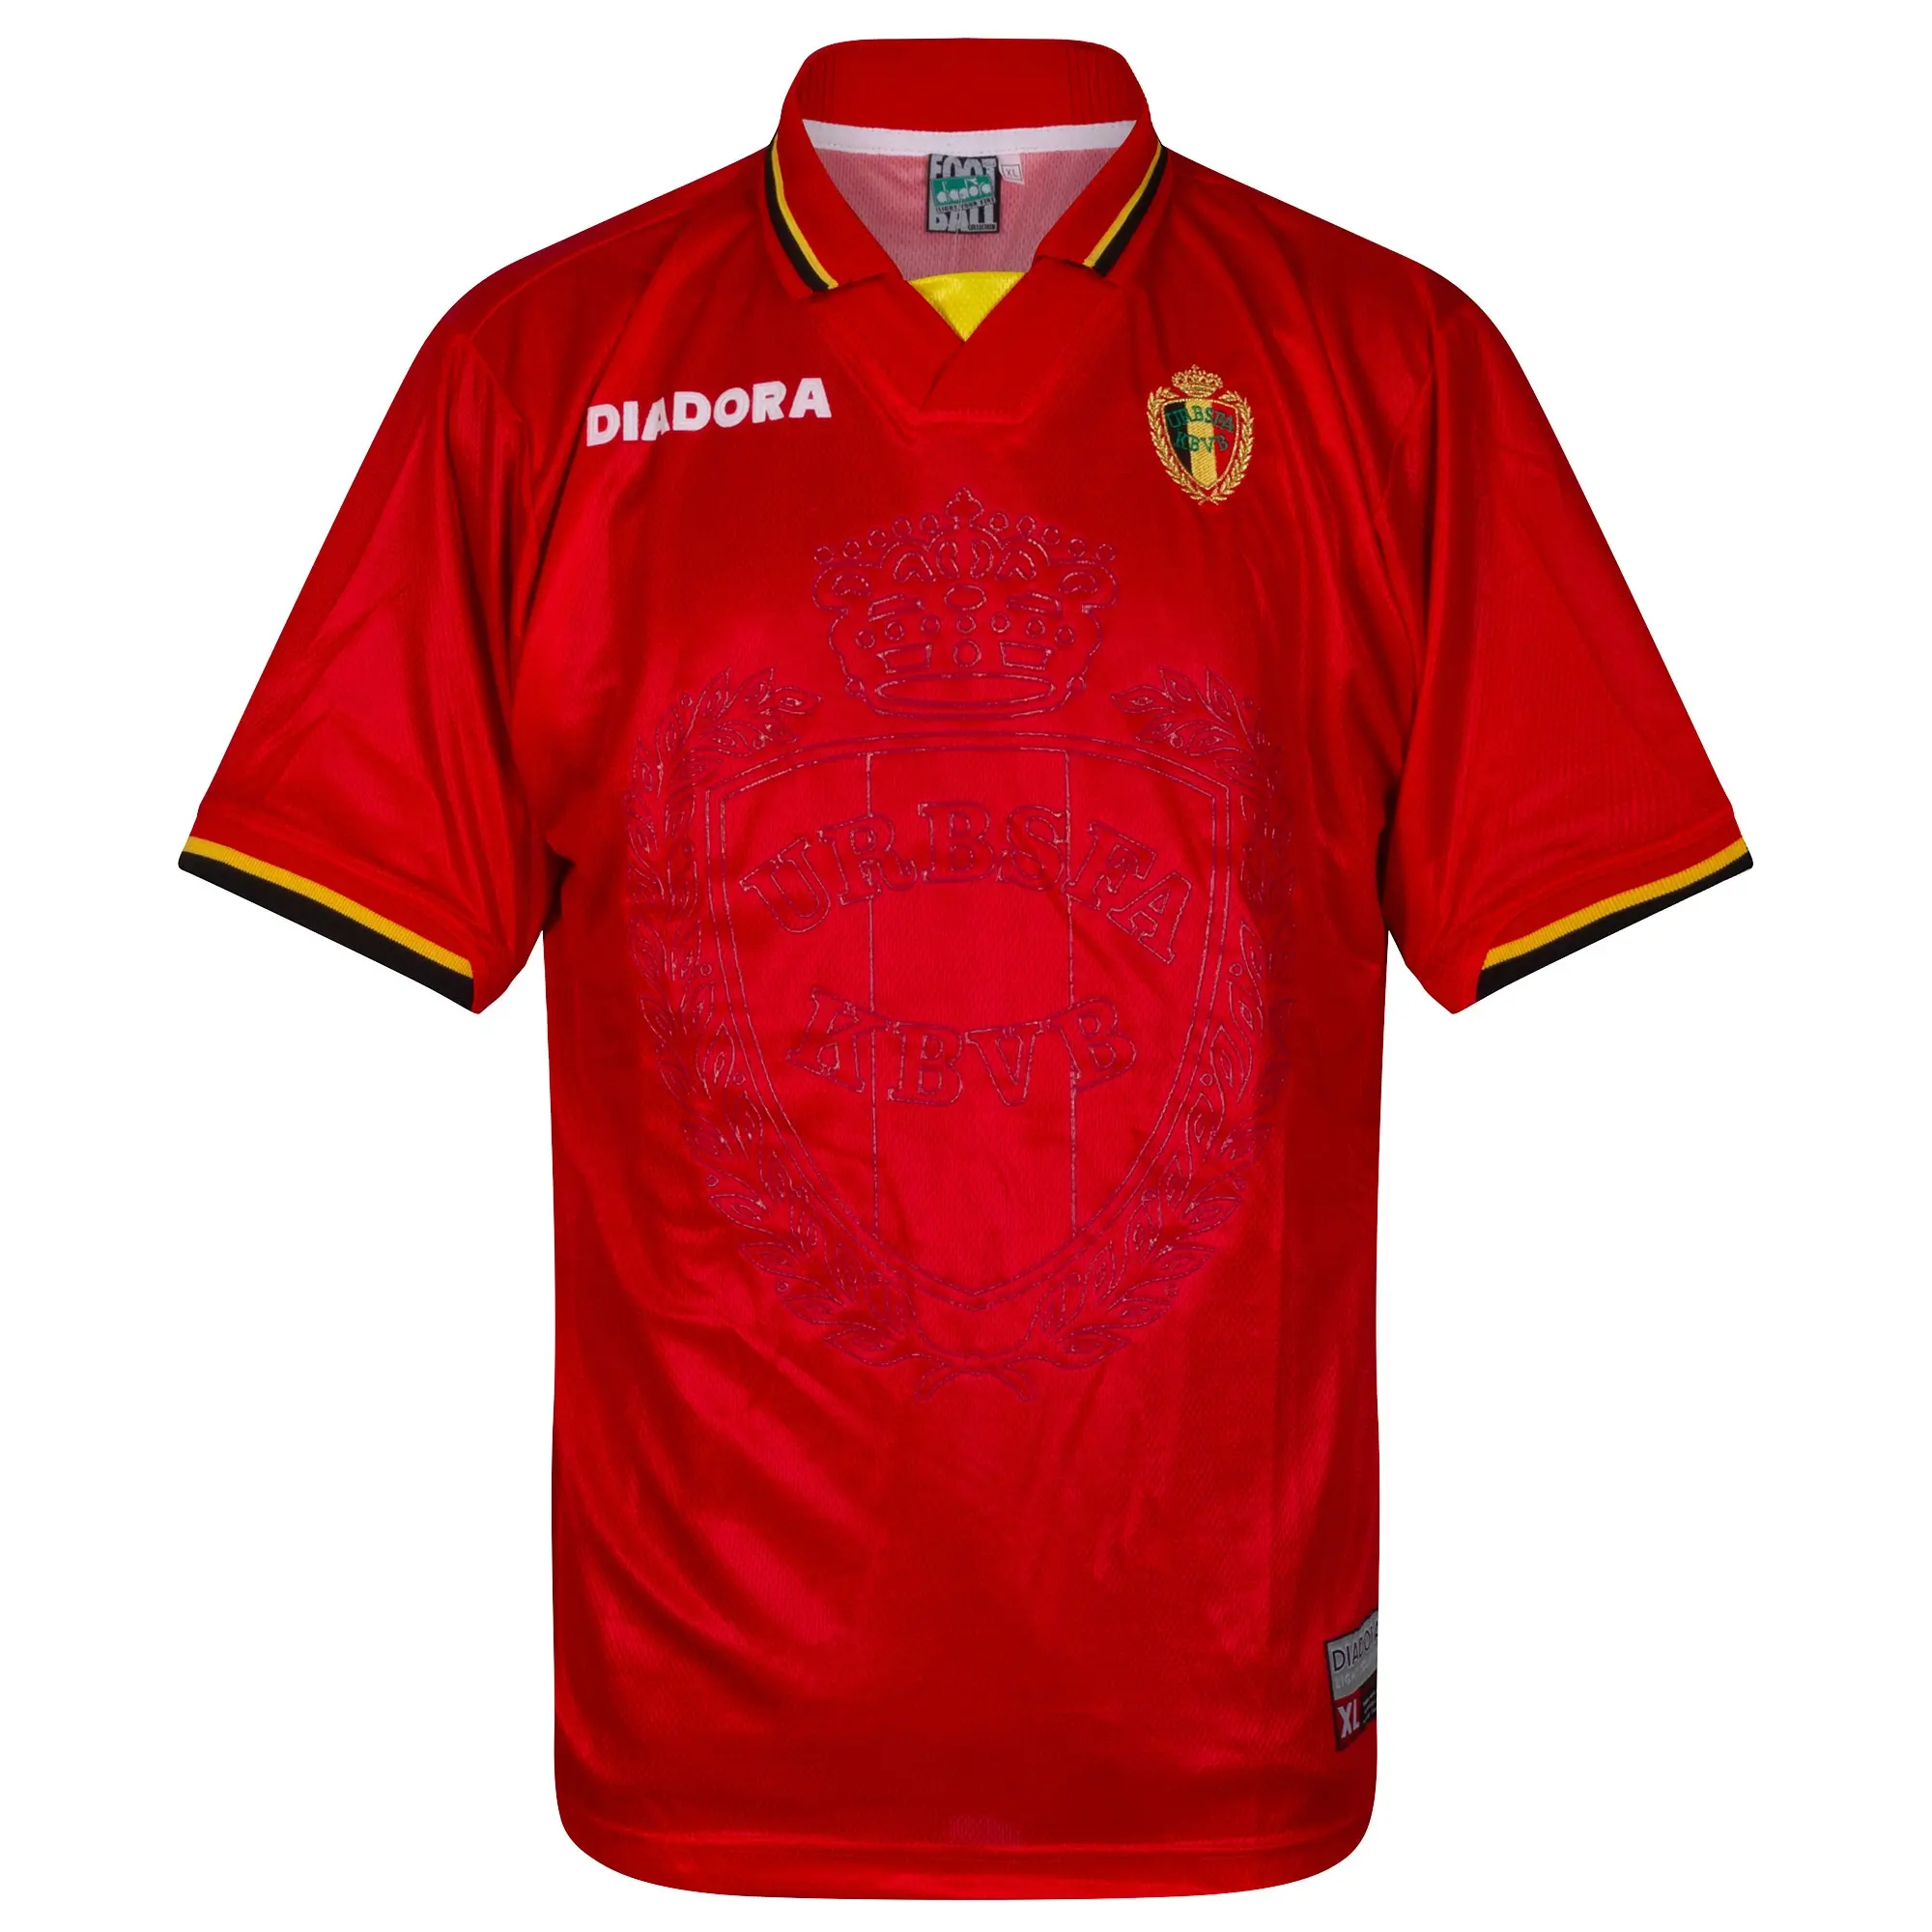 Diadora Belgium Mens SS Home Shirt 1996